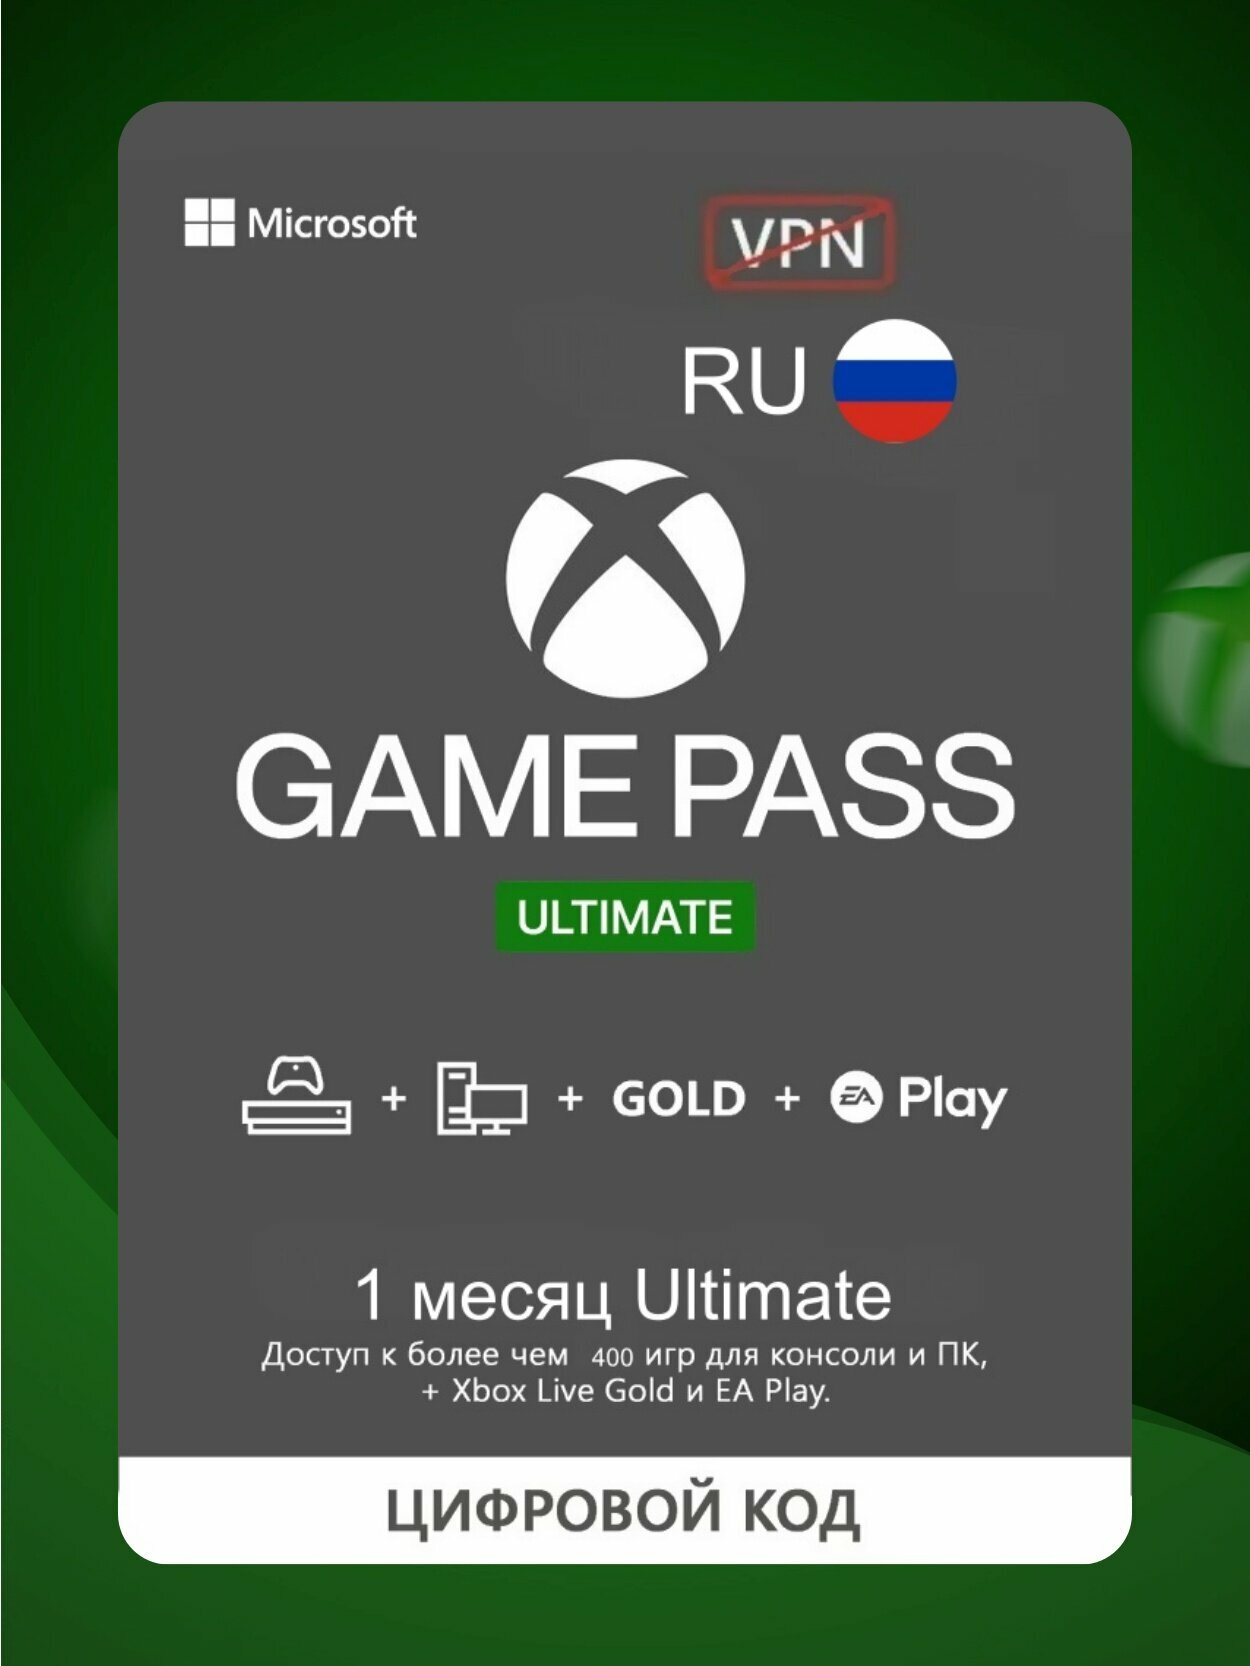 Подписка Xbox Game Pass Ultimate на 1 месяц (Версия для РФ) (Цифровая версия)